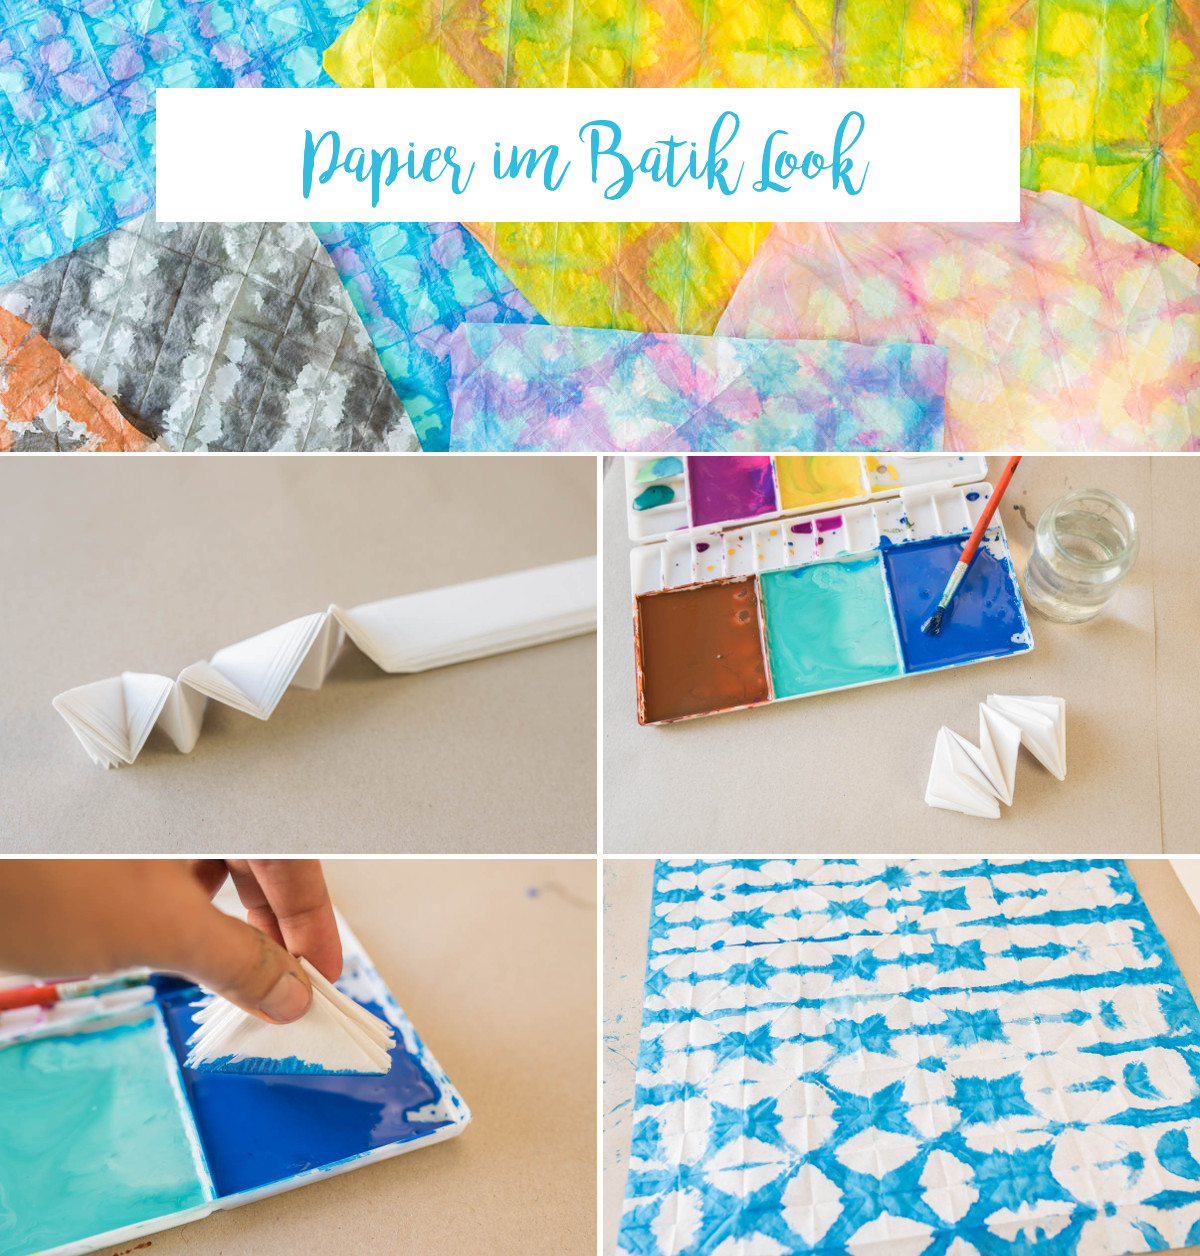 Anleitung für selbst gemachte DIY Holzschalen im Shibori Batik Look mit selbst gefärbtem Papier und Serviettentechnik im Boho Look